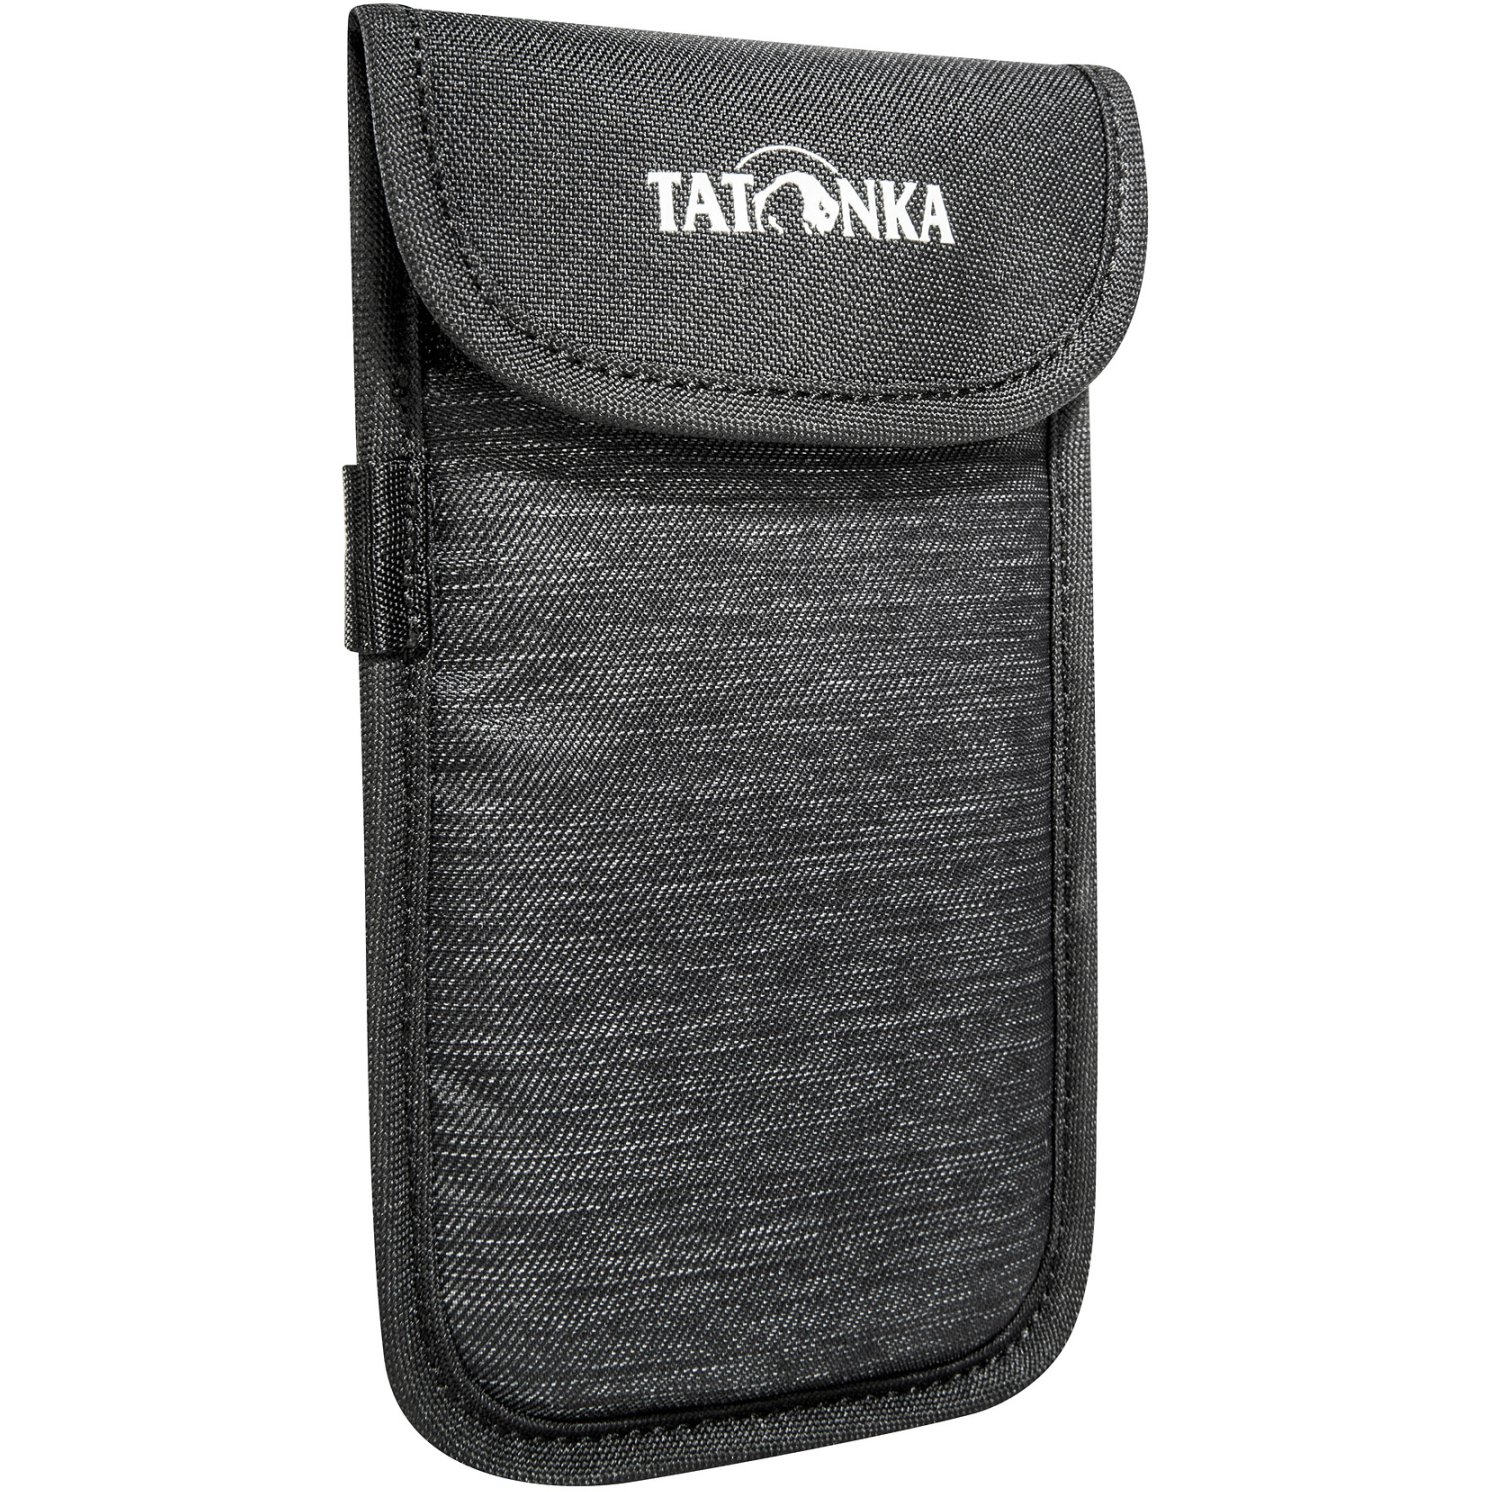 Produktbild von Tatonka Smartphone Case XL - Handyhülle - off black